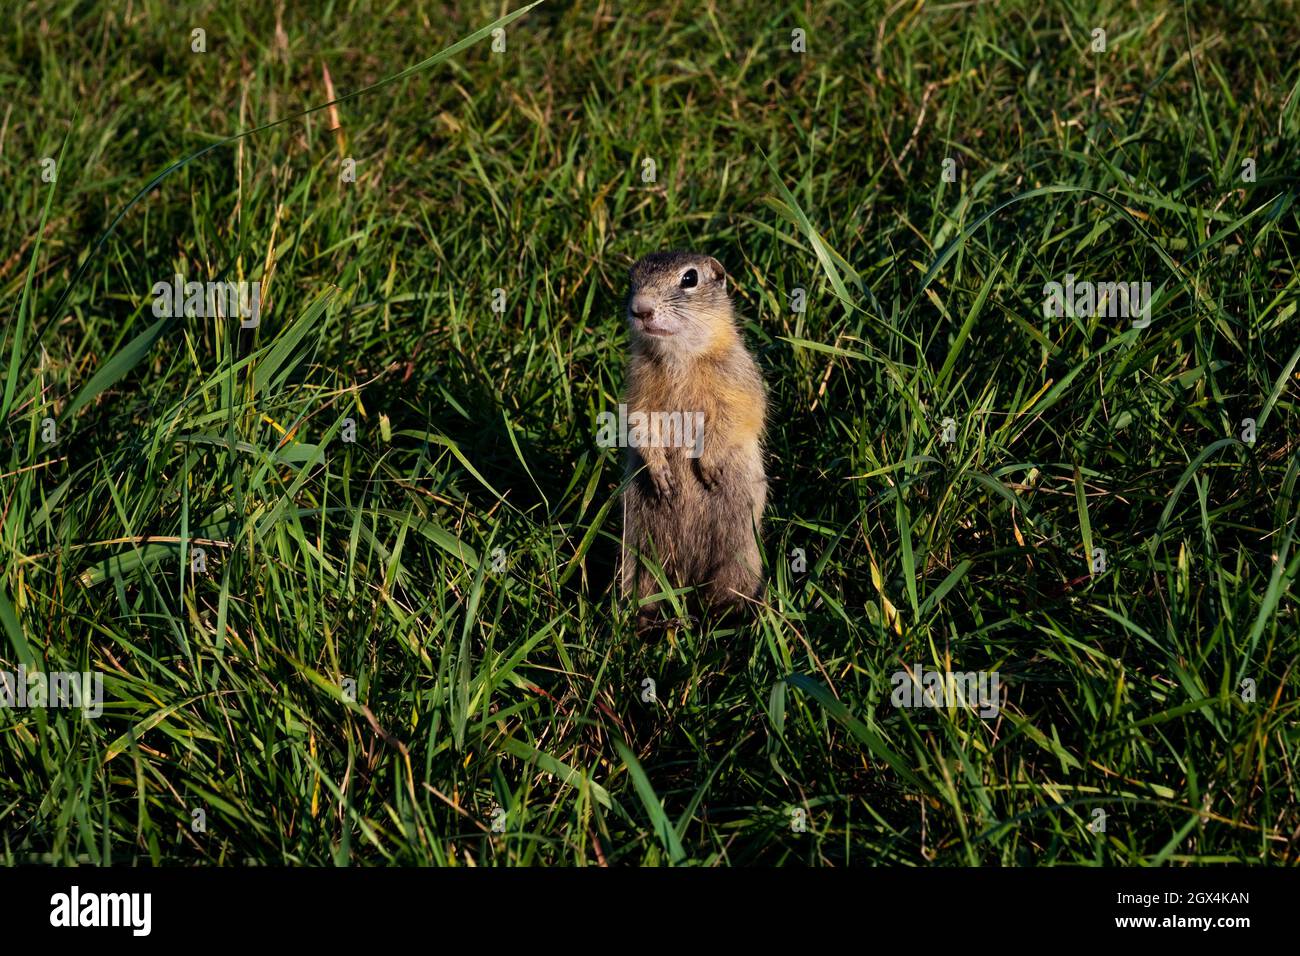 Le petit rongeur, de la famille des écureuils, se tient comme un poste sur ses pattes arrière, parmi l'herbe verte dans l'habitat naturel de la nature sauvage en été. Banque D'Images